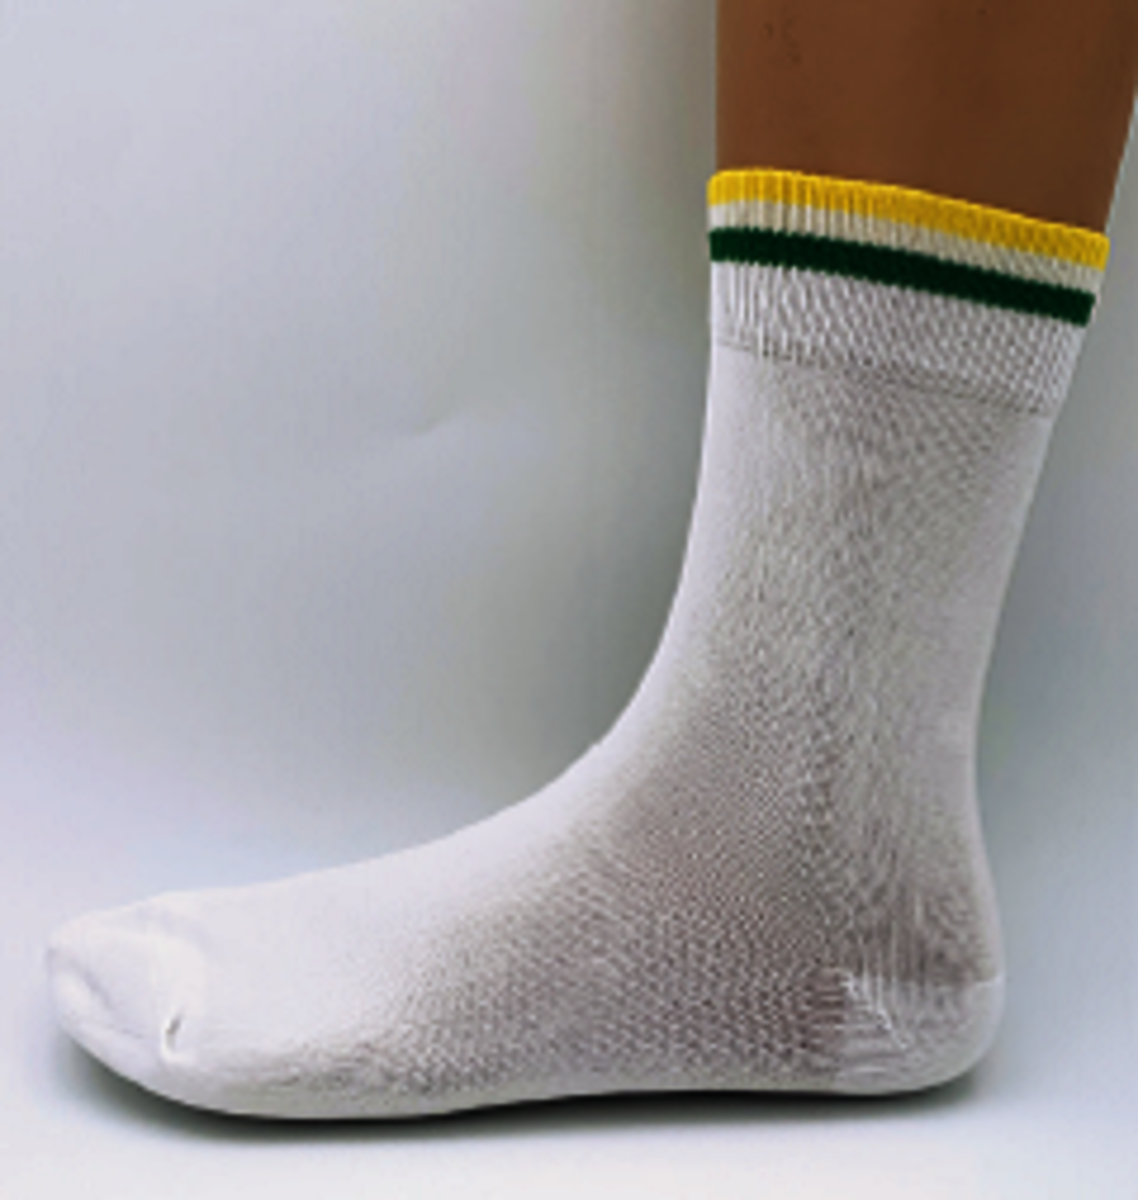 Reusable cleanroom socks